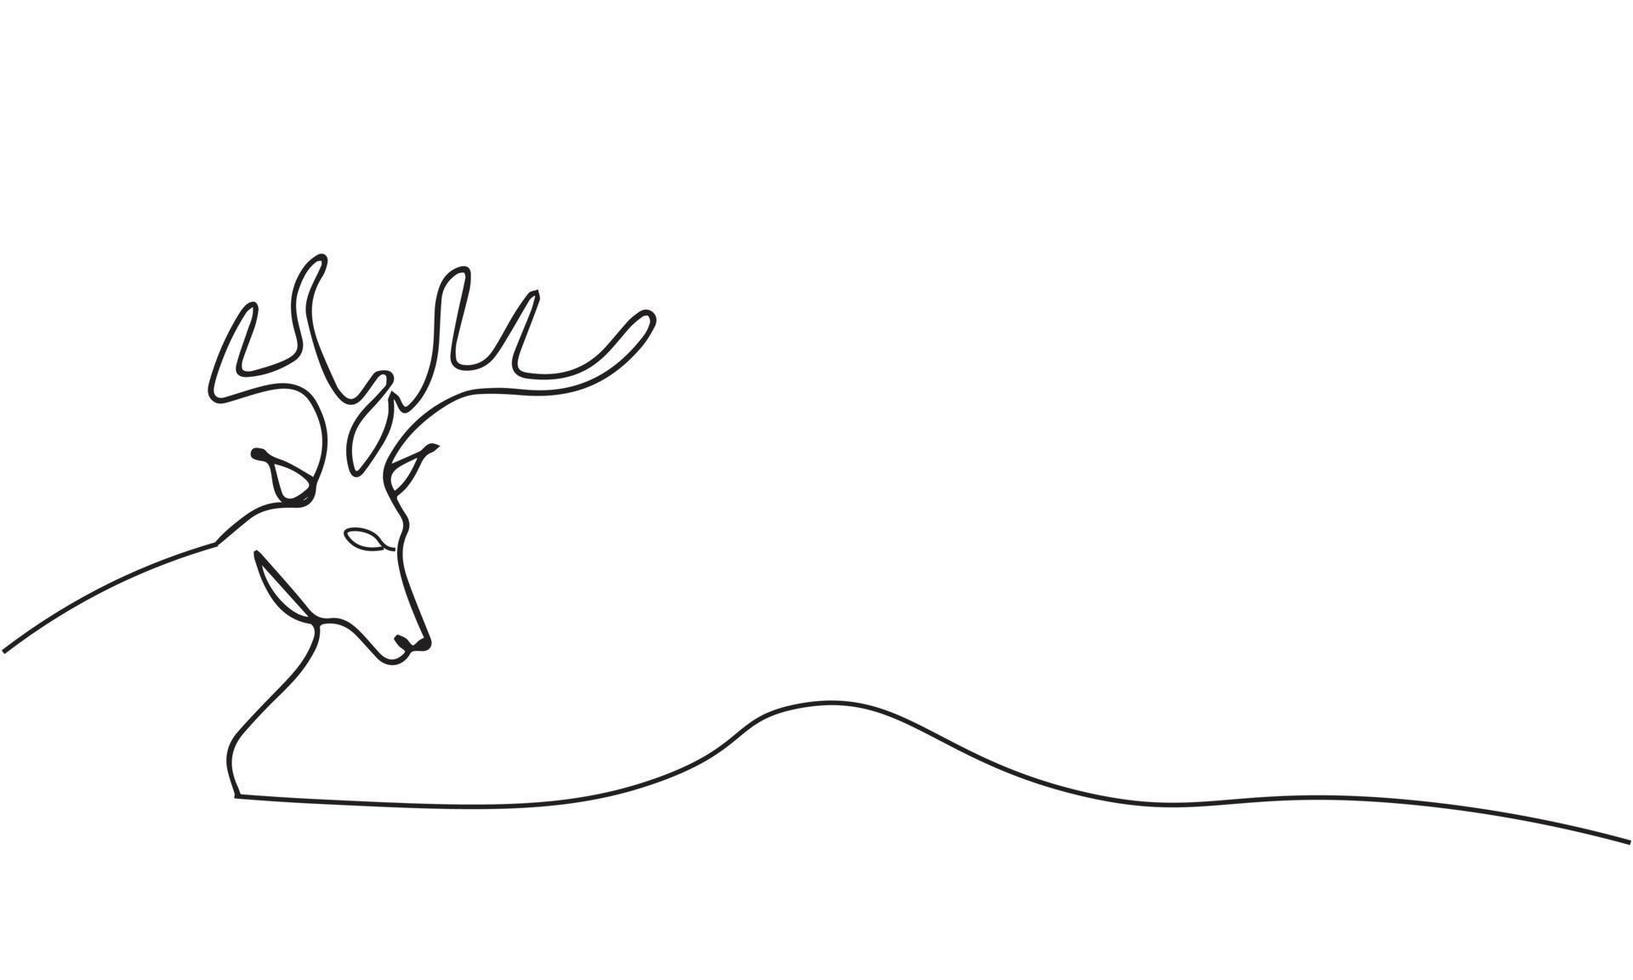 dessin continu d'une ligne de cerf avec. illustration vectorielle du thème animal cerf animal vecteur